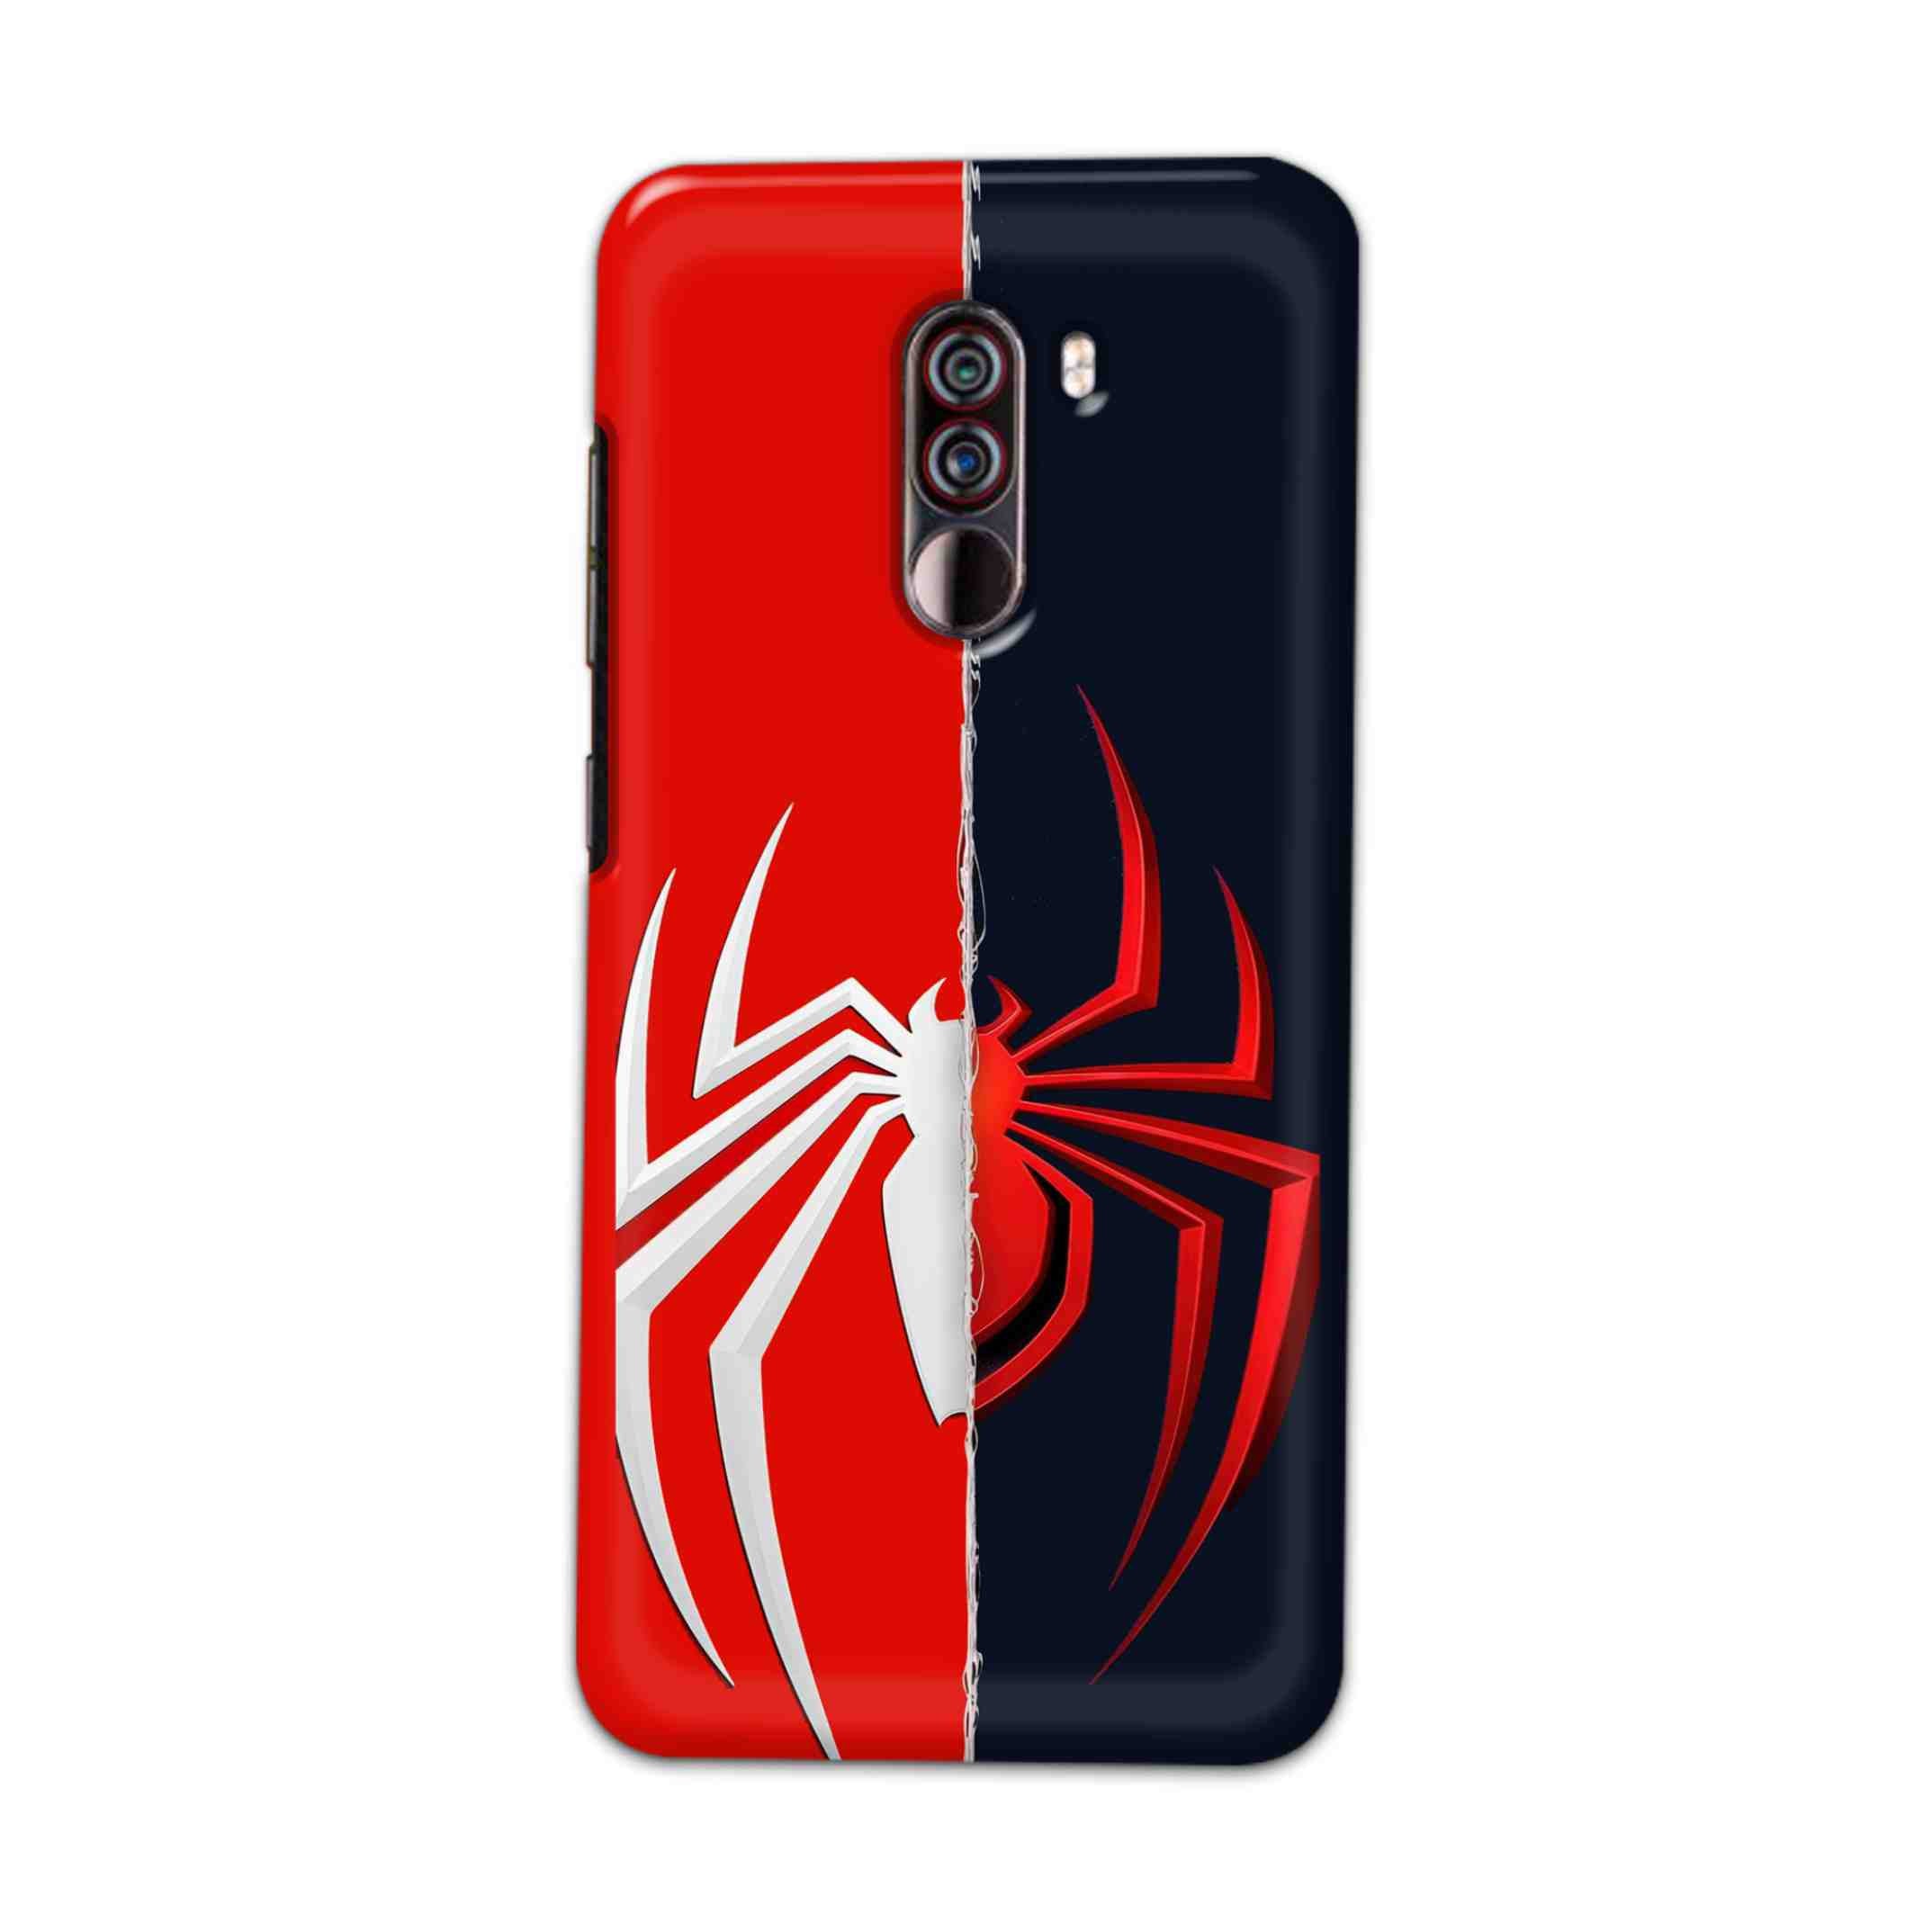 Buy Spademan Vs Venom Hard Back Mobile Phone Case Cover For Xiaomi Pocophone F1 Online